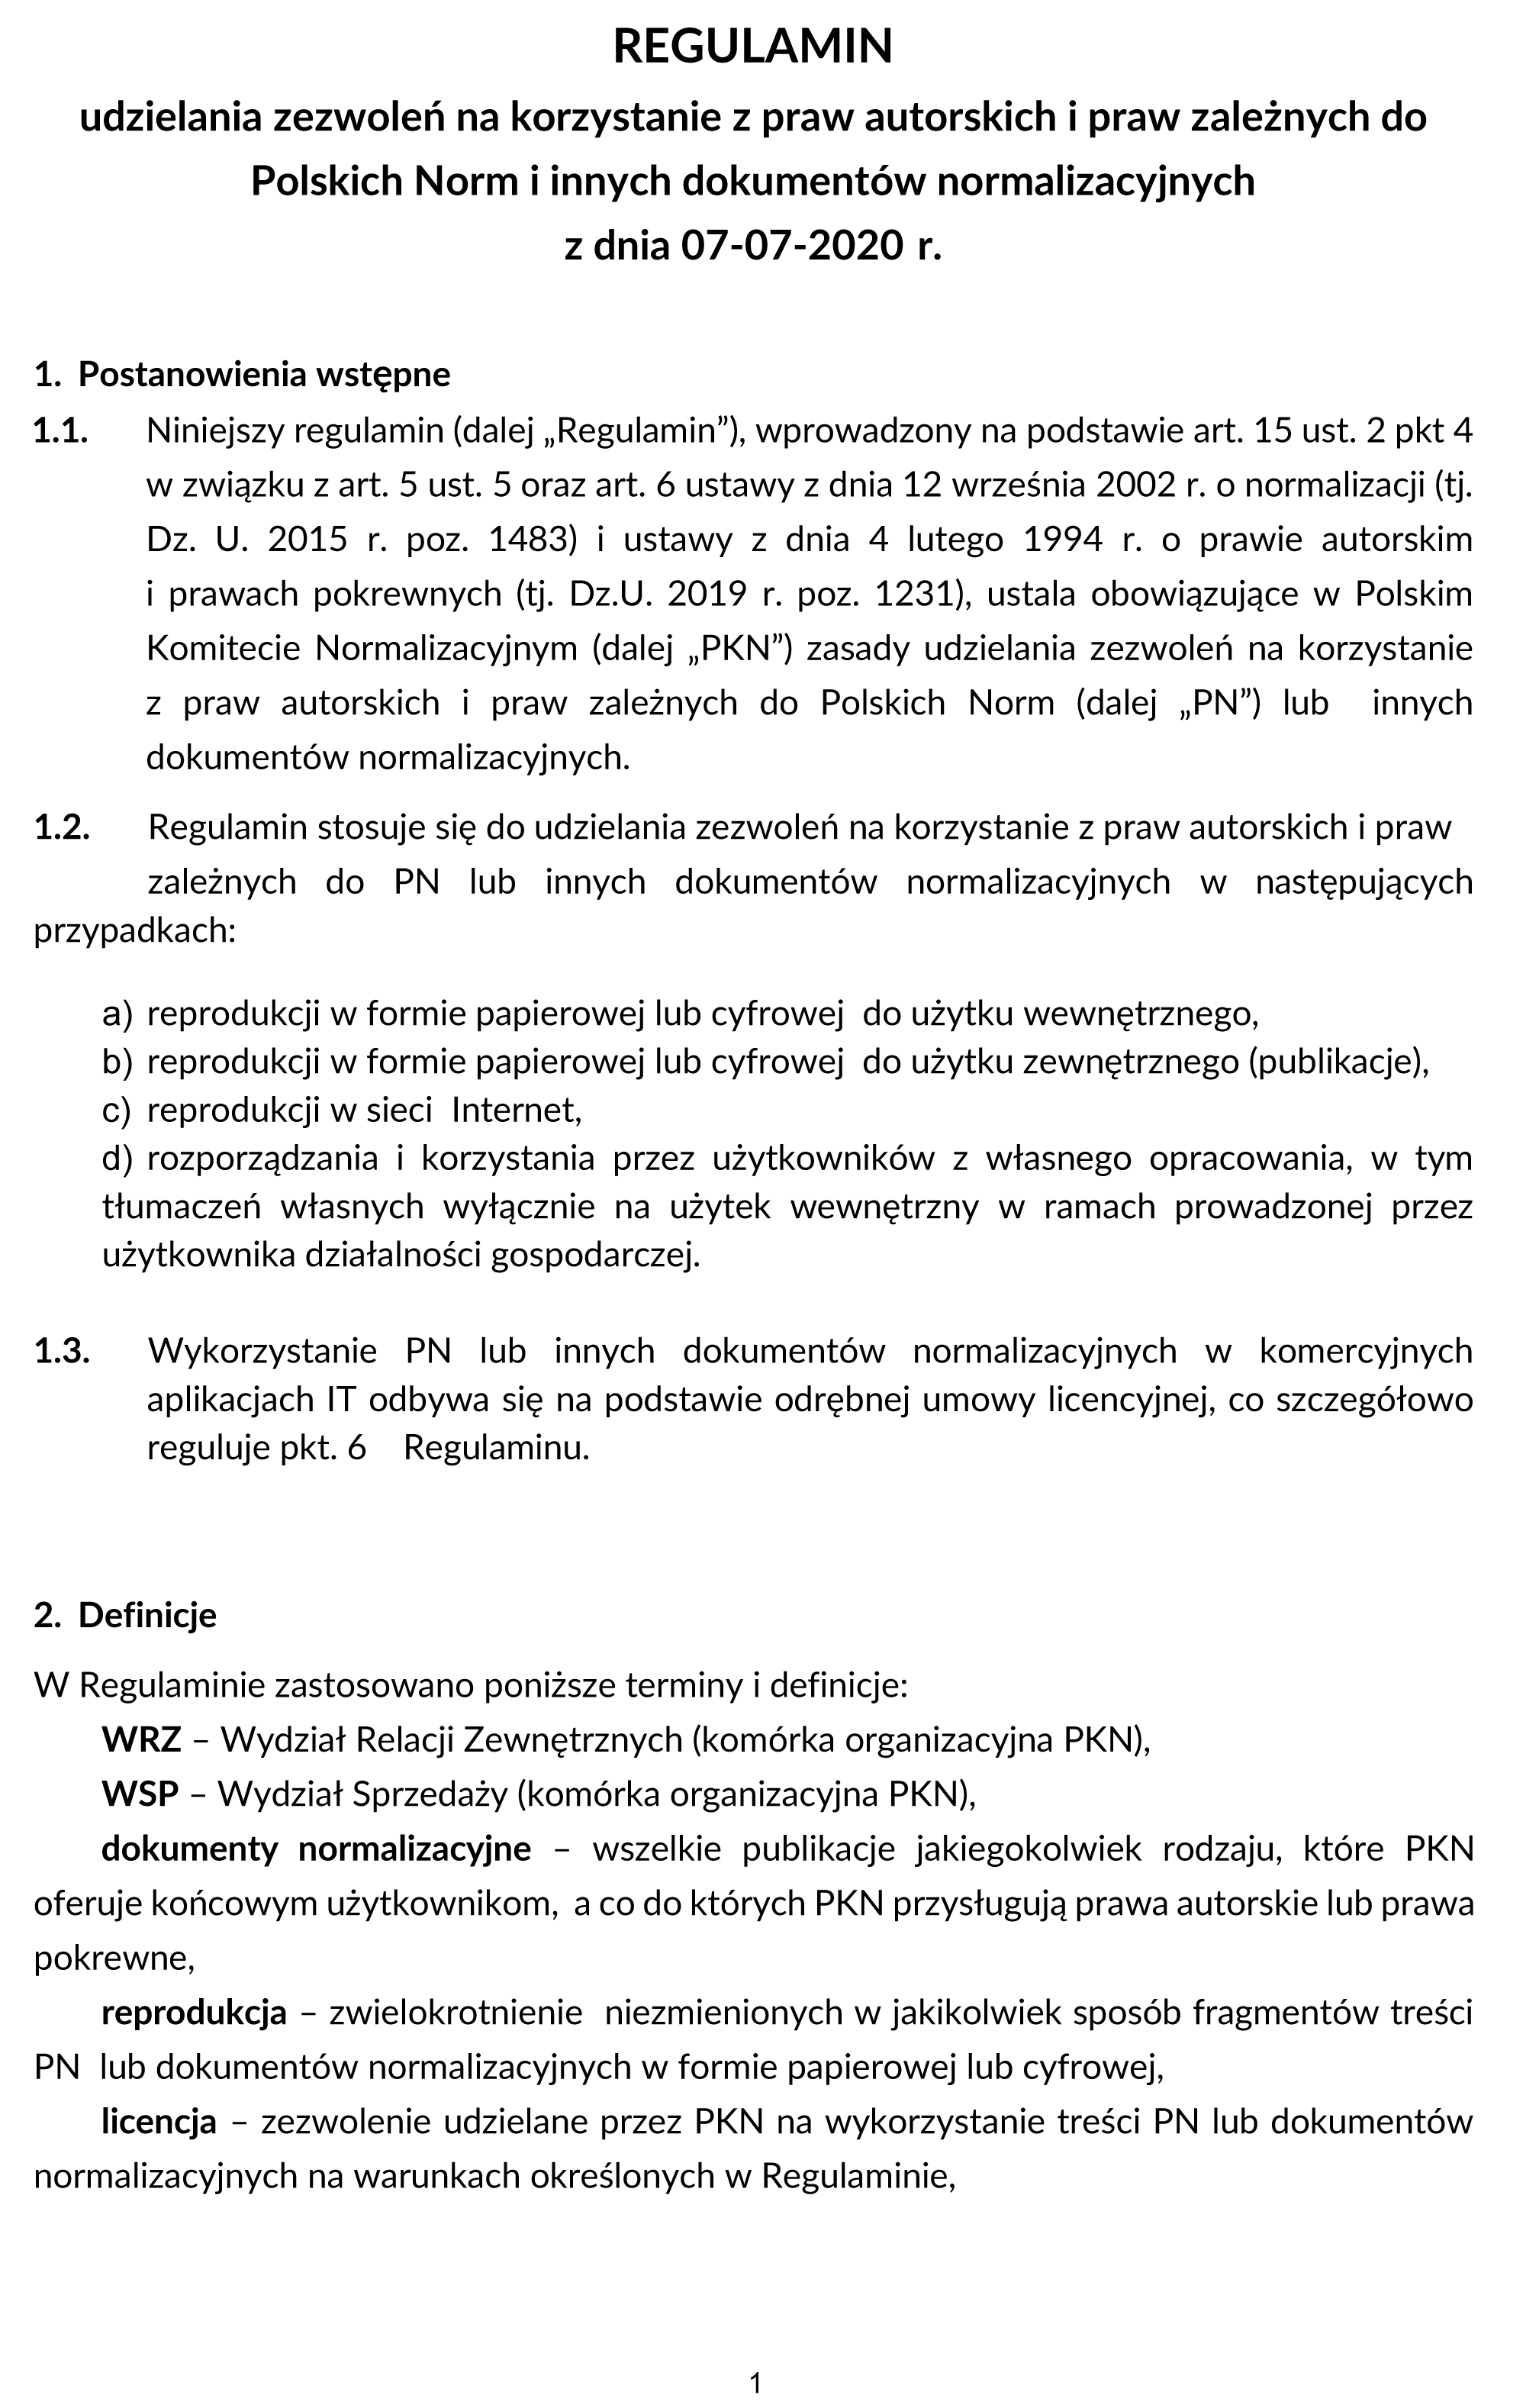 Print screen pierwszej strony Regulaminu udzielania zezwoleń na korzystanie z praw autorskich i praw zależnych do Polskich Norm i innych dokumentów normalizacyjnych, otwierający ten dokument w formie PDF.